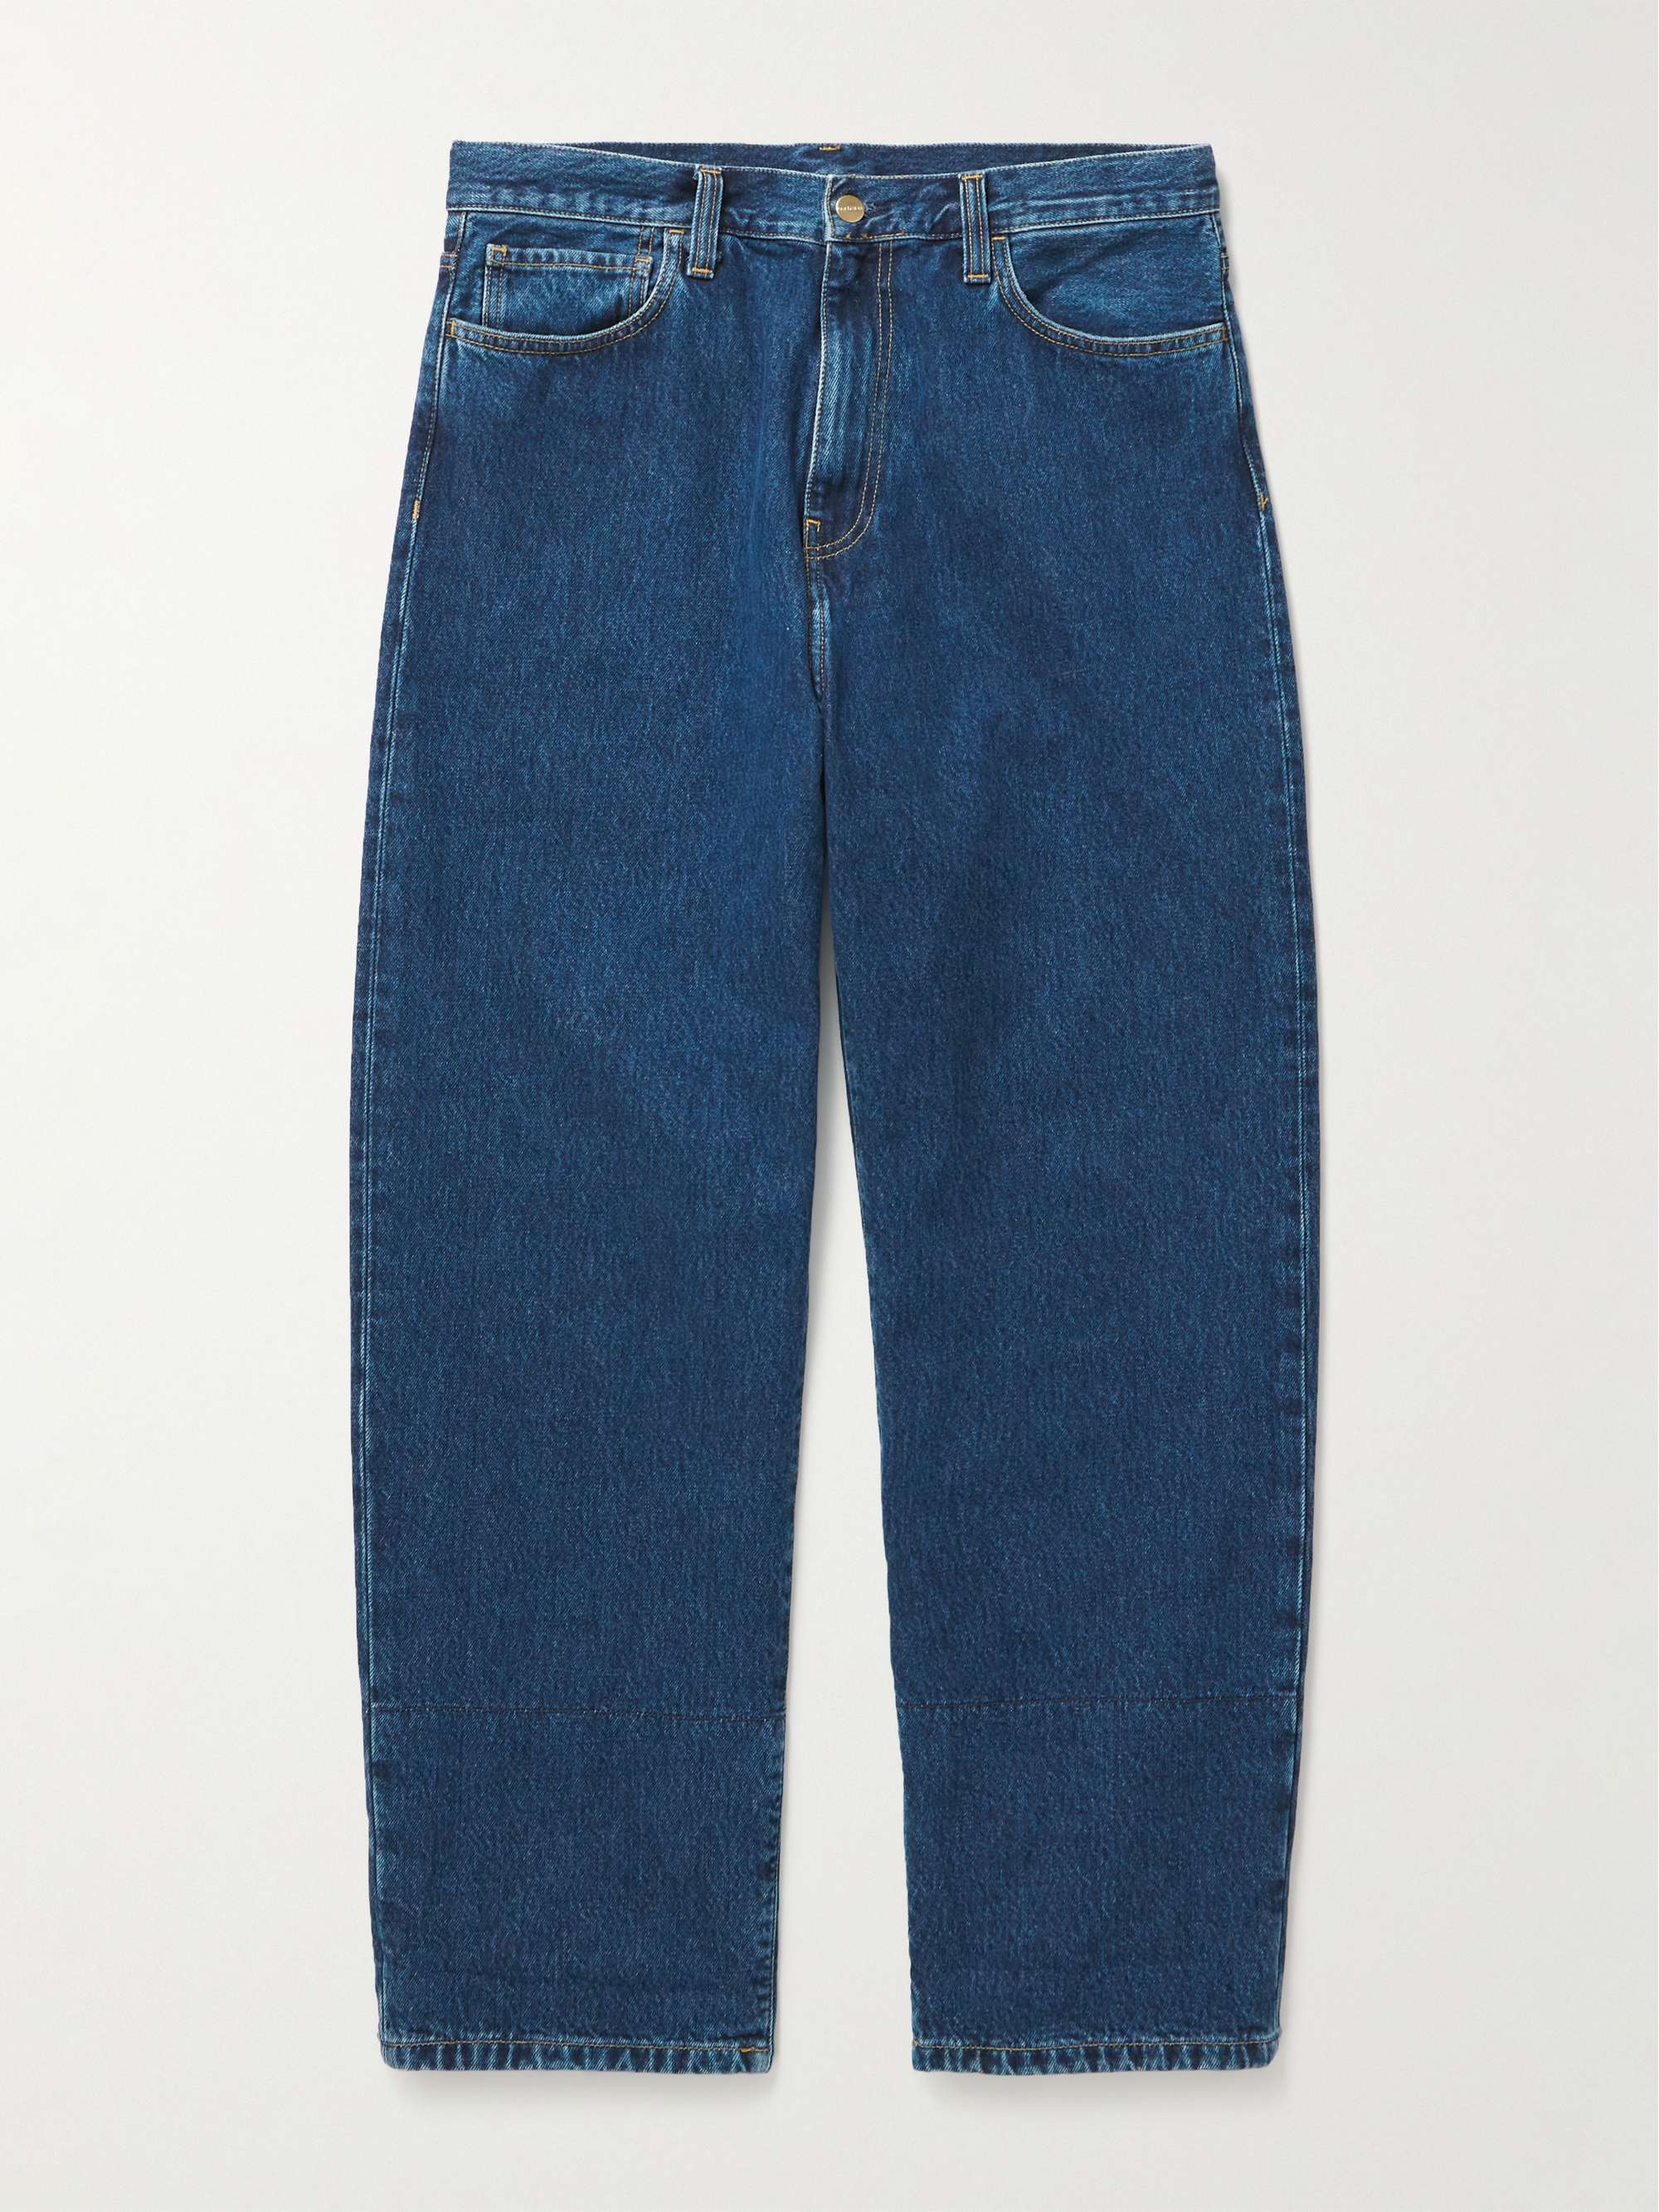 CARHARTT WIP Rider Straight-Leg Flannel-Trimmed Jeans for Men | MR PORTER